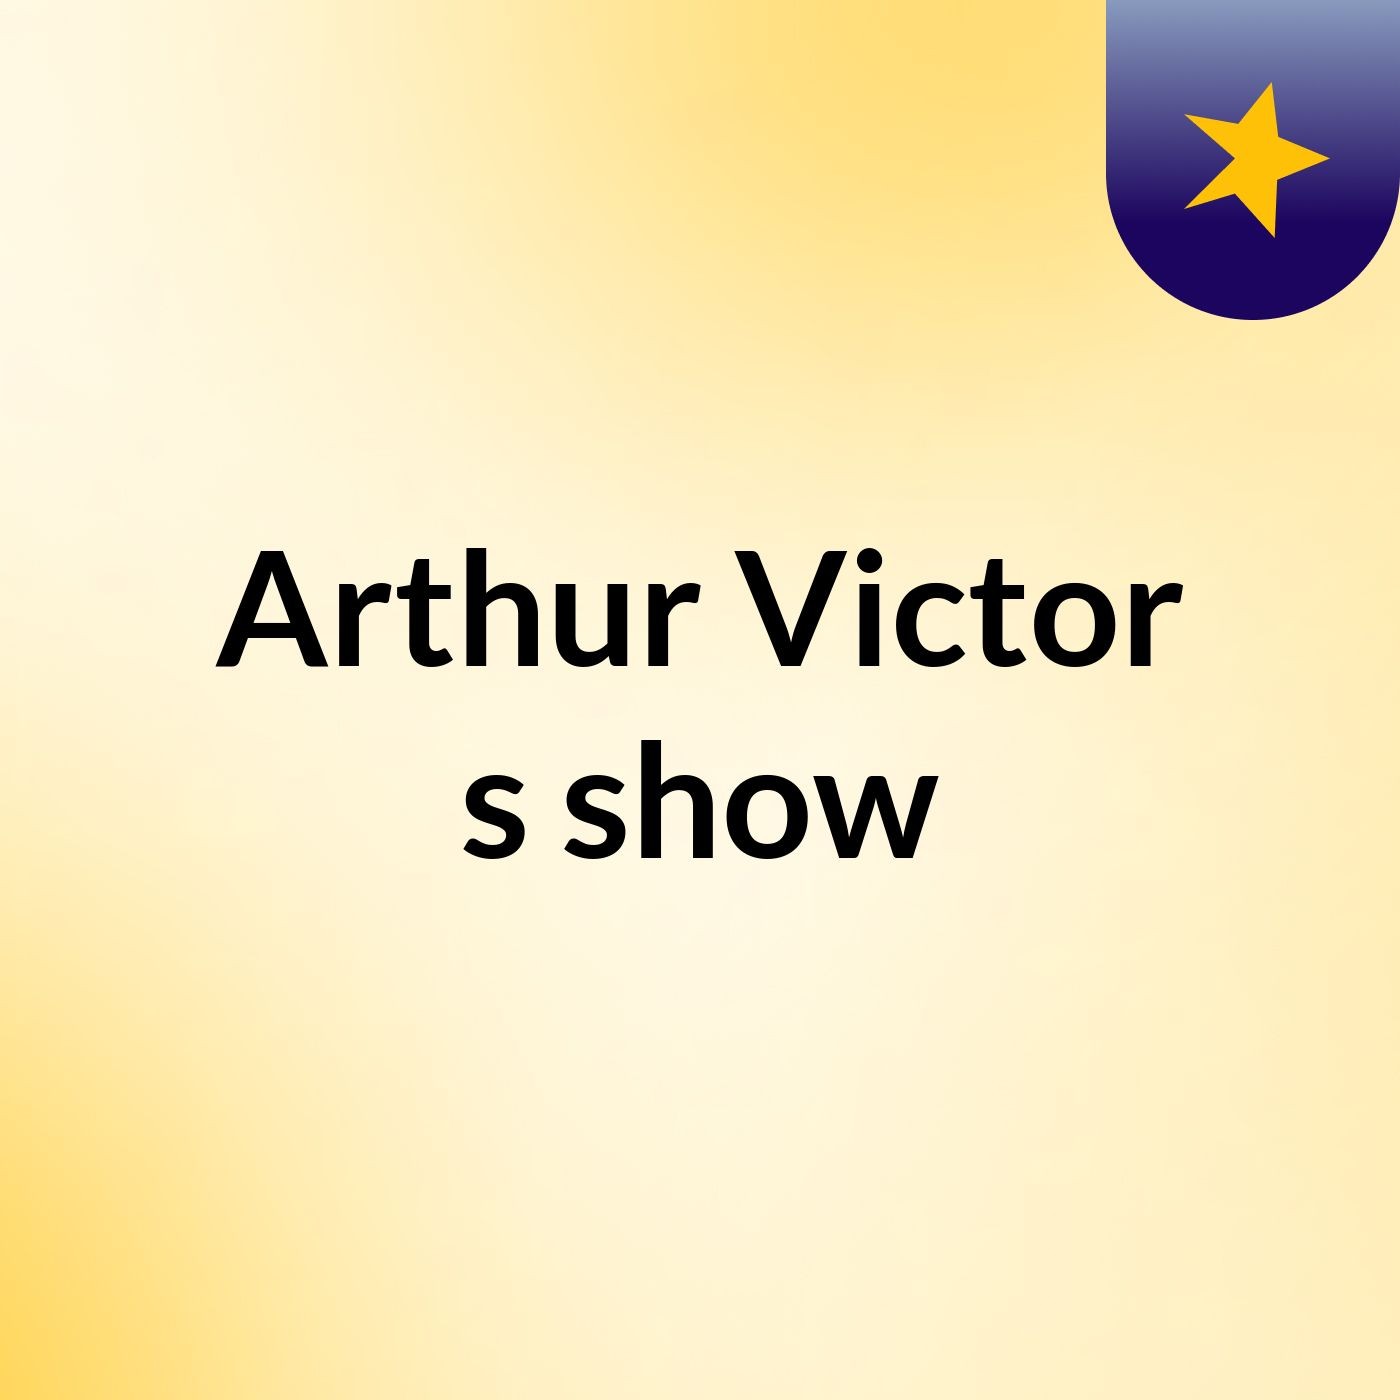 Arthur Victor's show